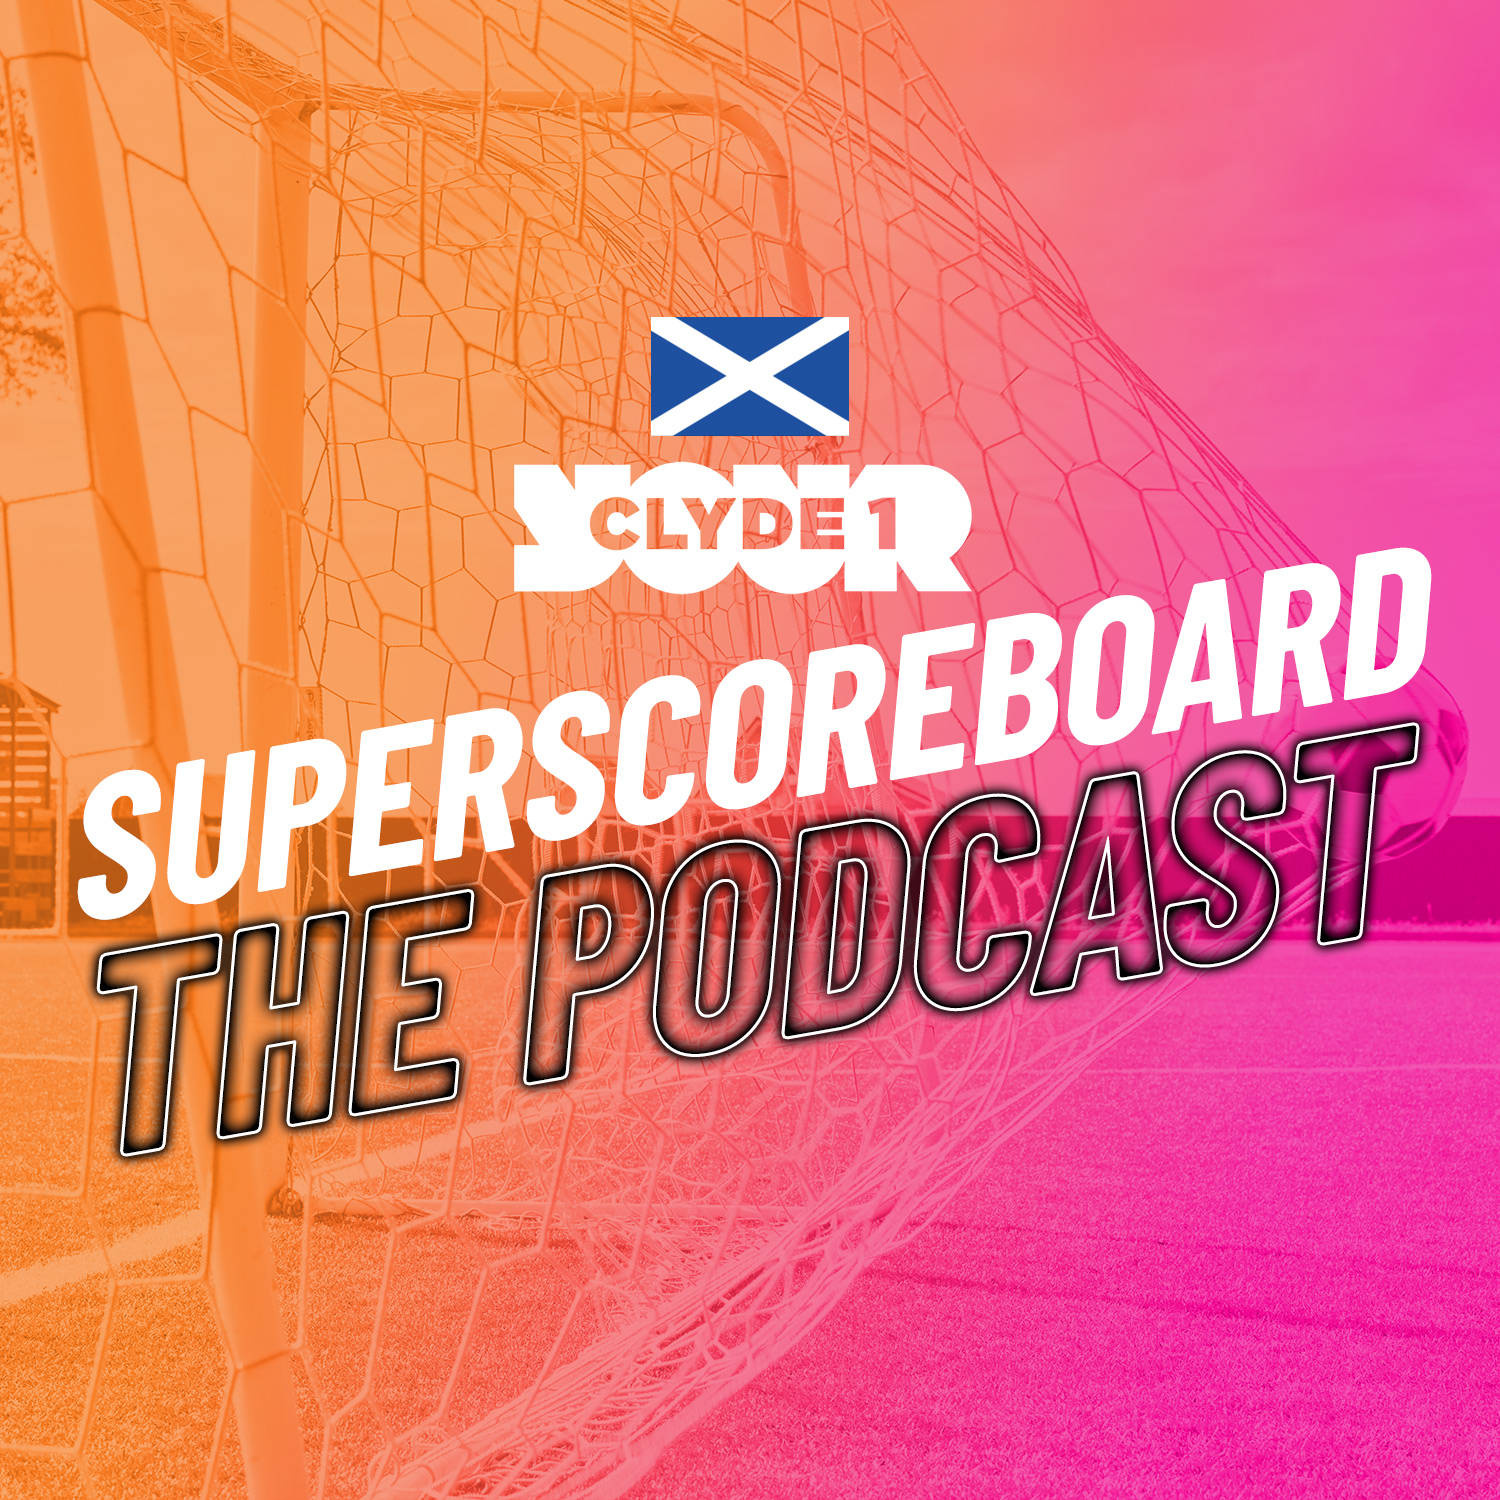 Friday 22nd December Clyde 1 Superscoreboard